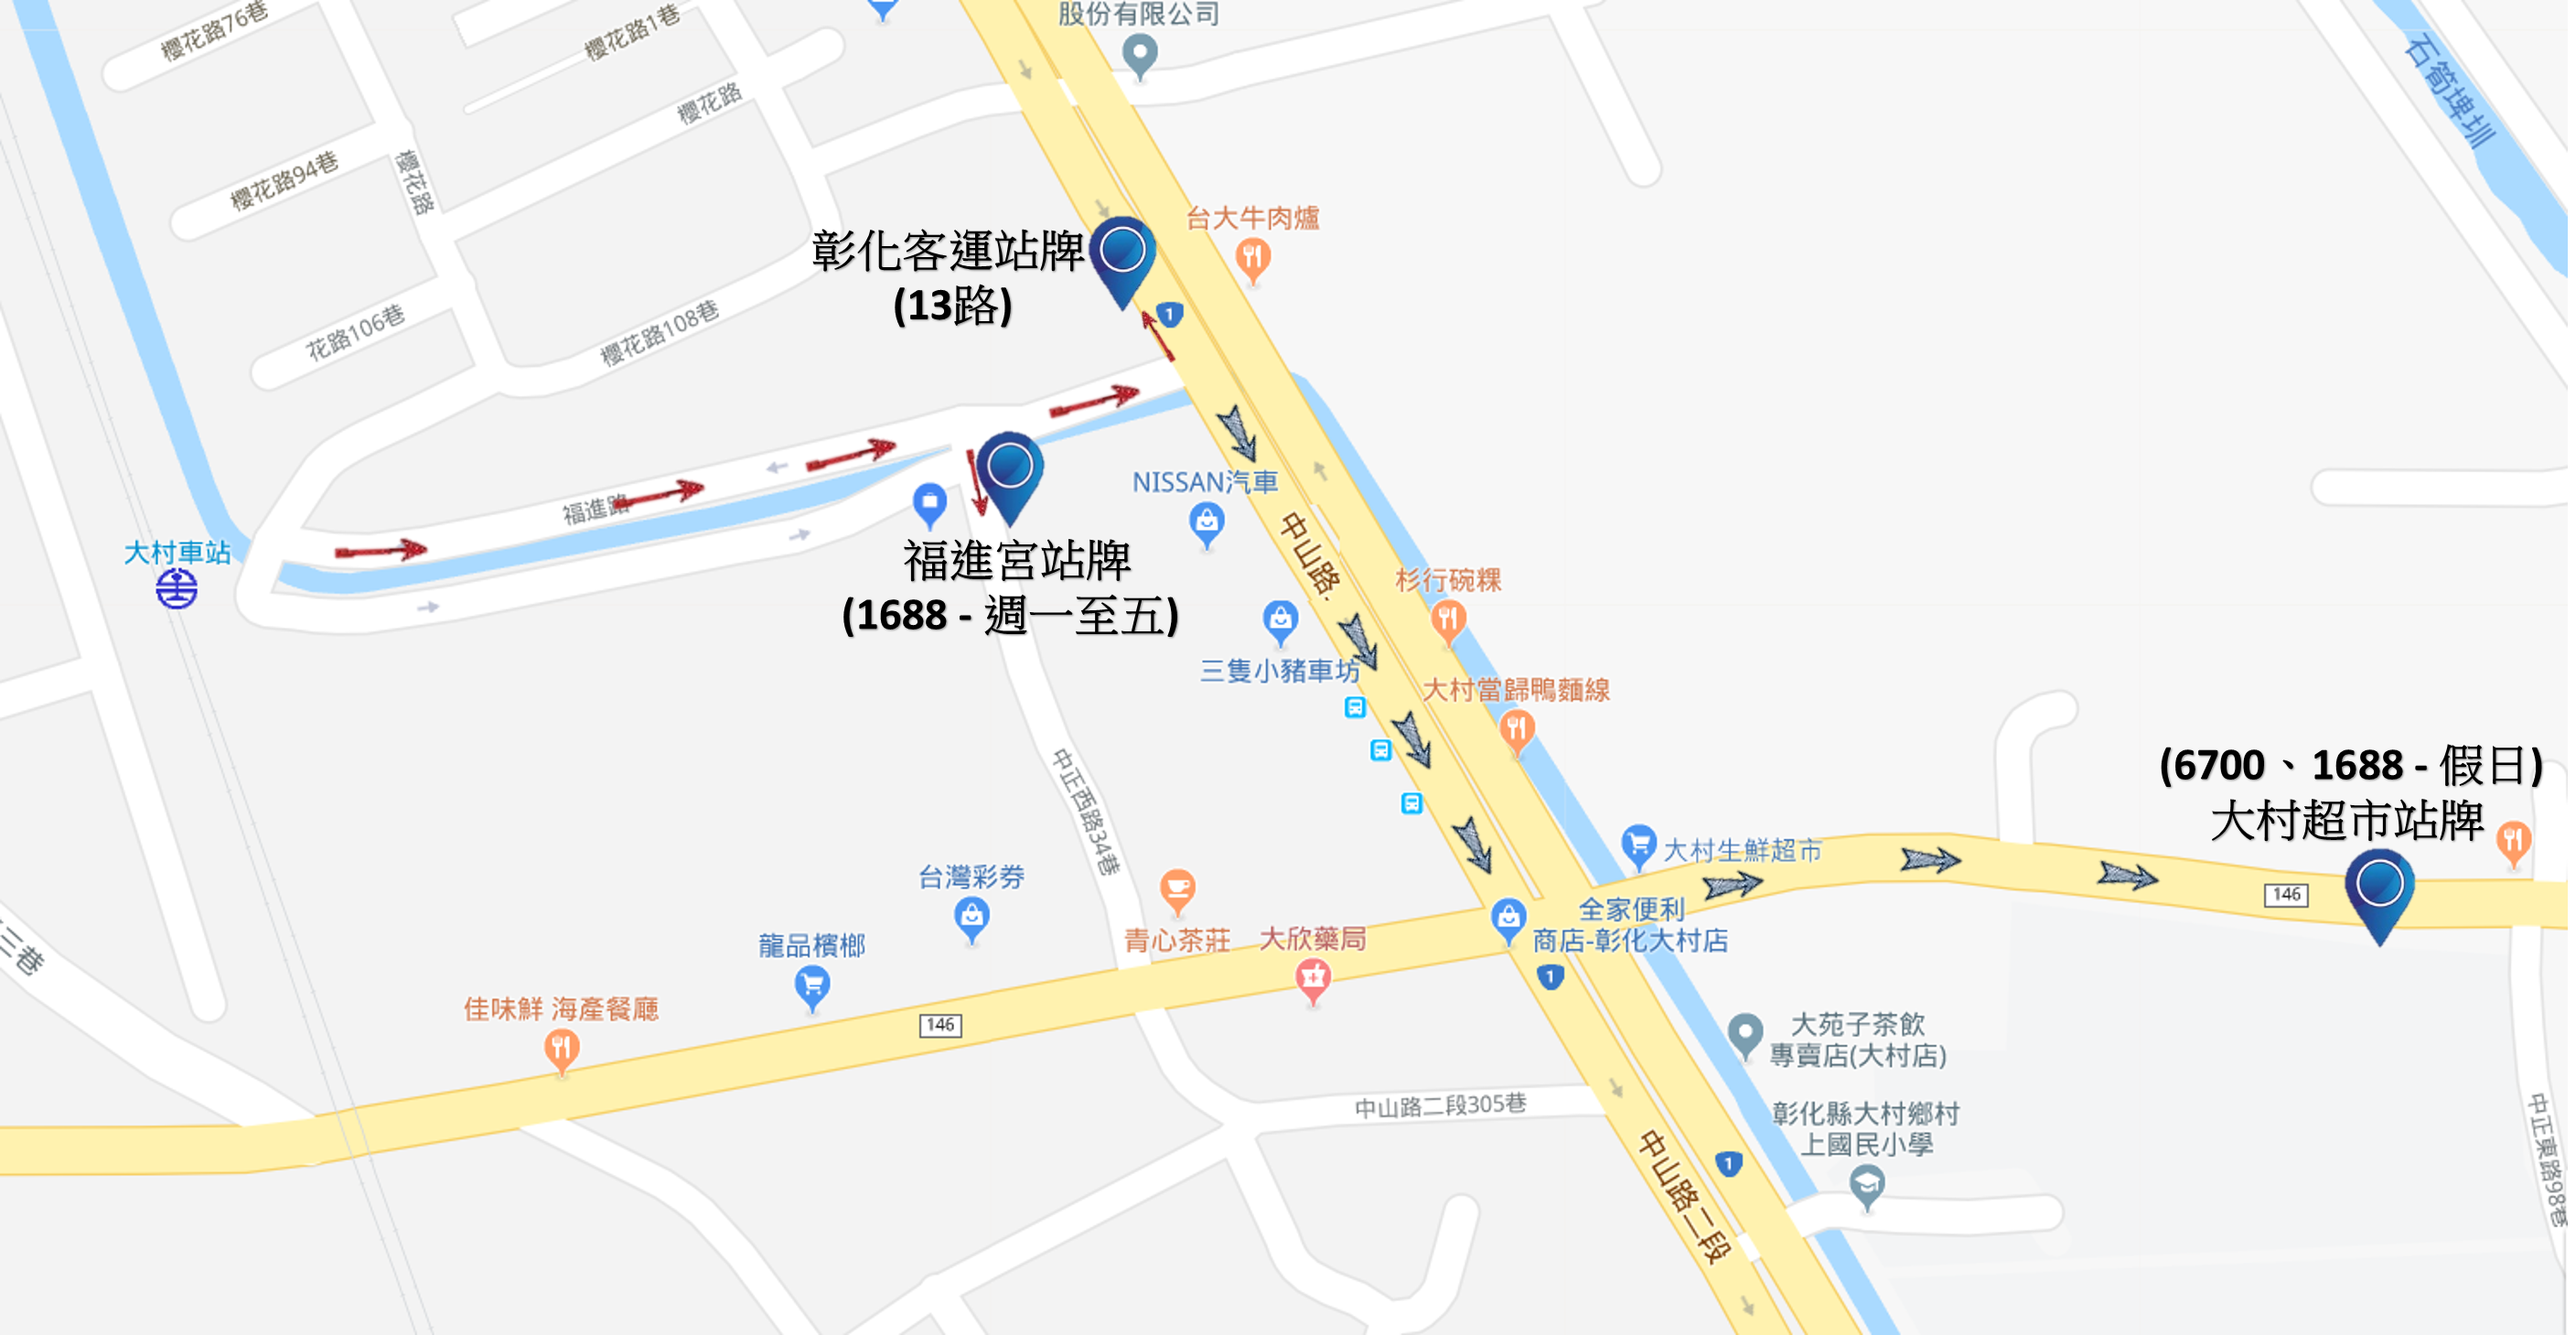 1688公車：搭乘地點位於大村火車站前站 中山路出口 (週一至週日)插圖